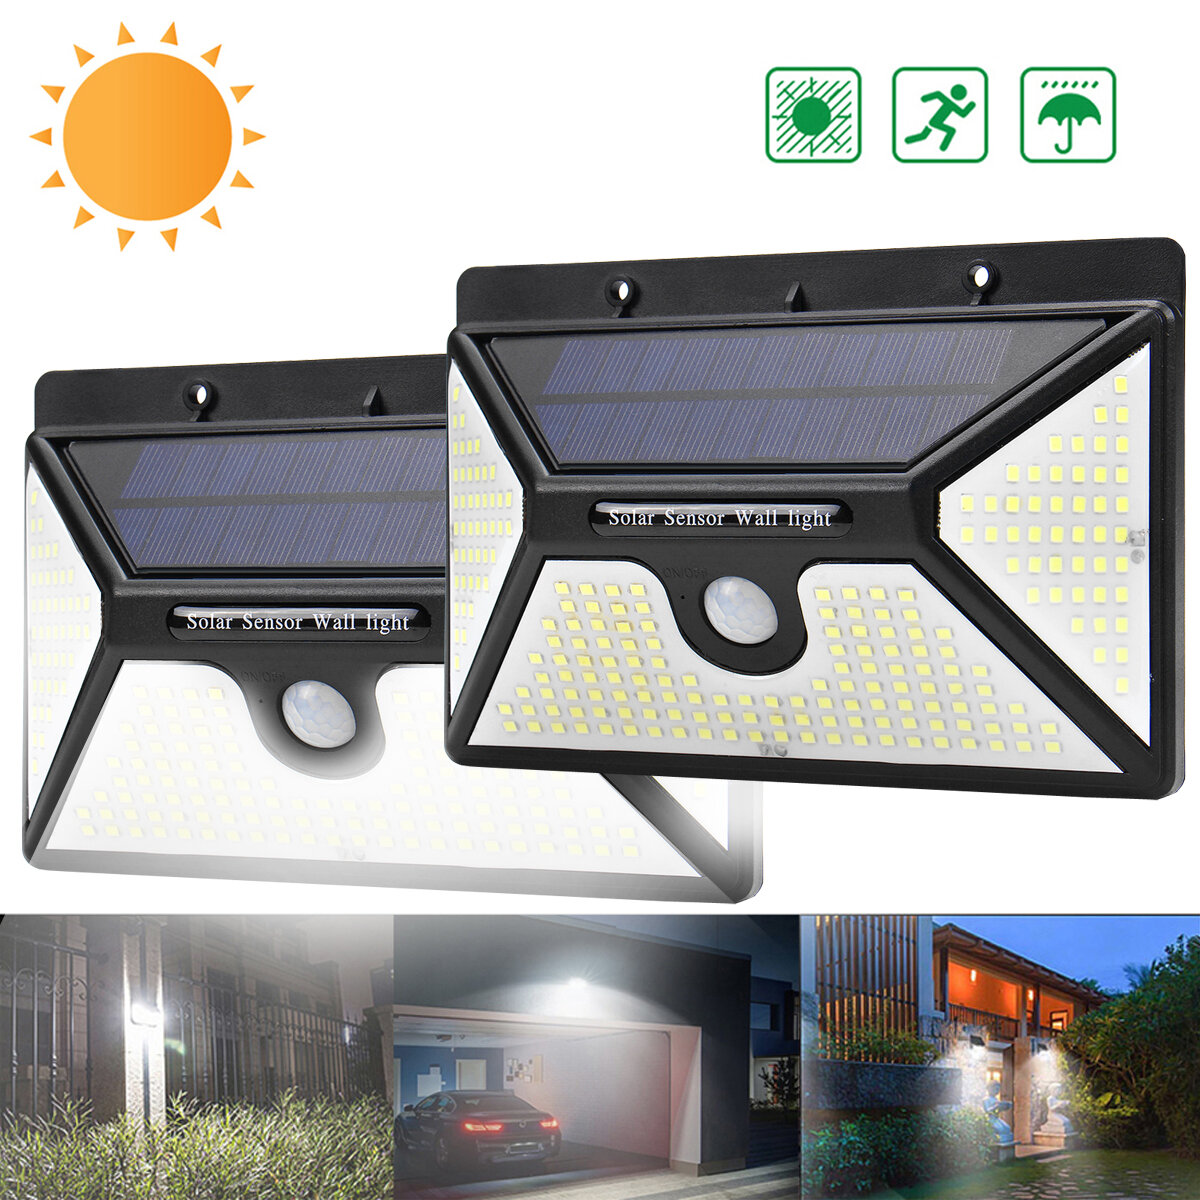 ARILUX 218 LED Solar Power PIR Motion Sensor Wall Light Outdoor Garden Light Waterproof 